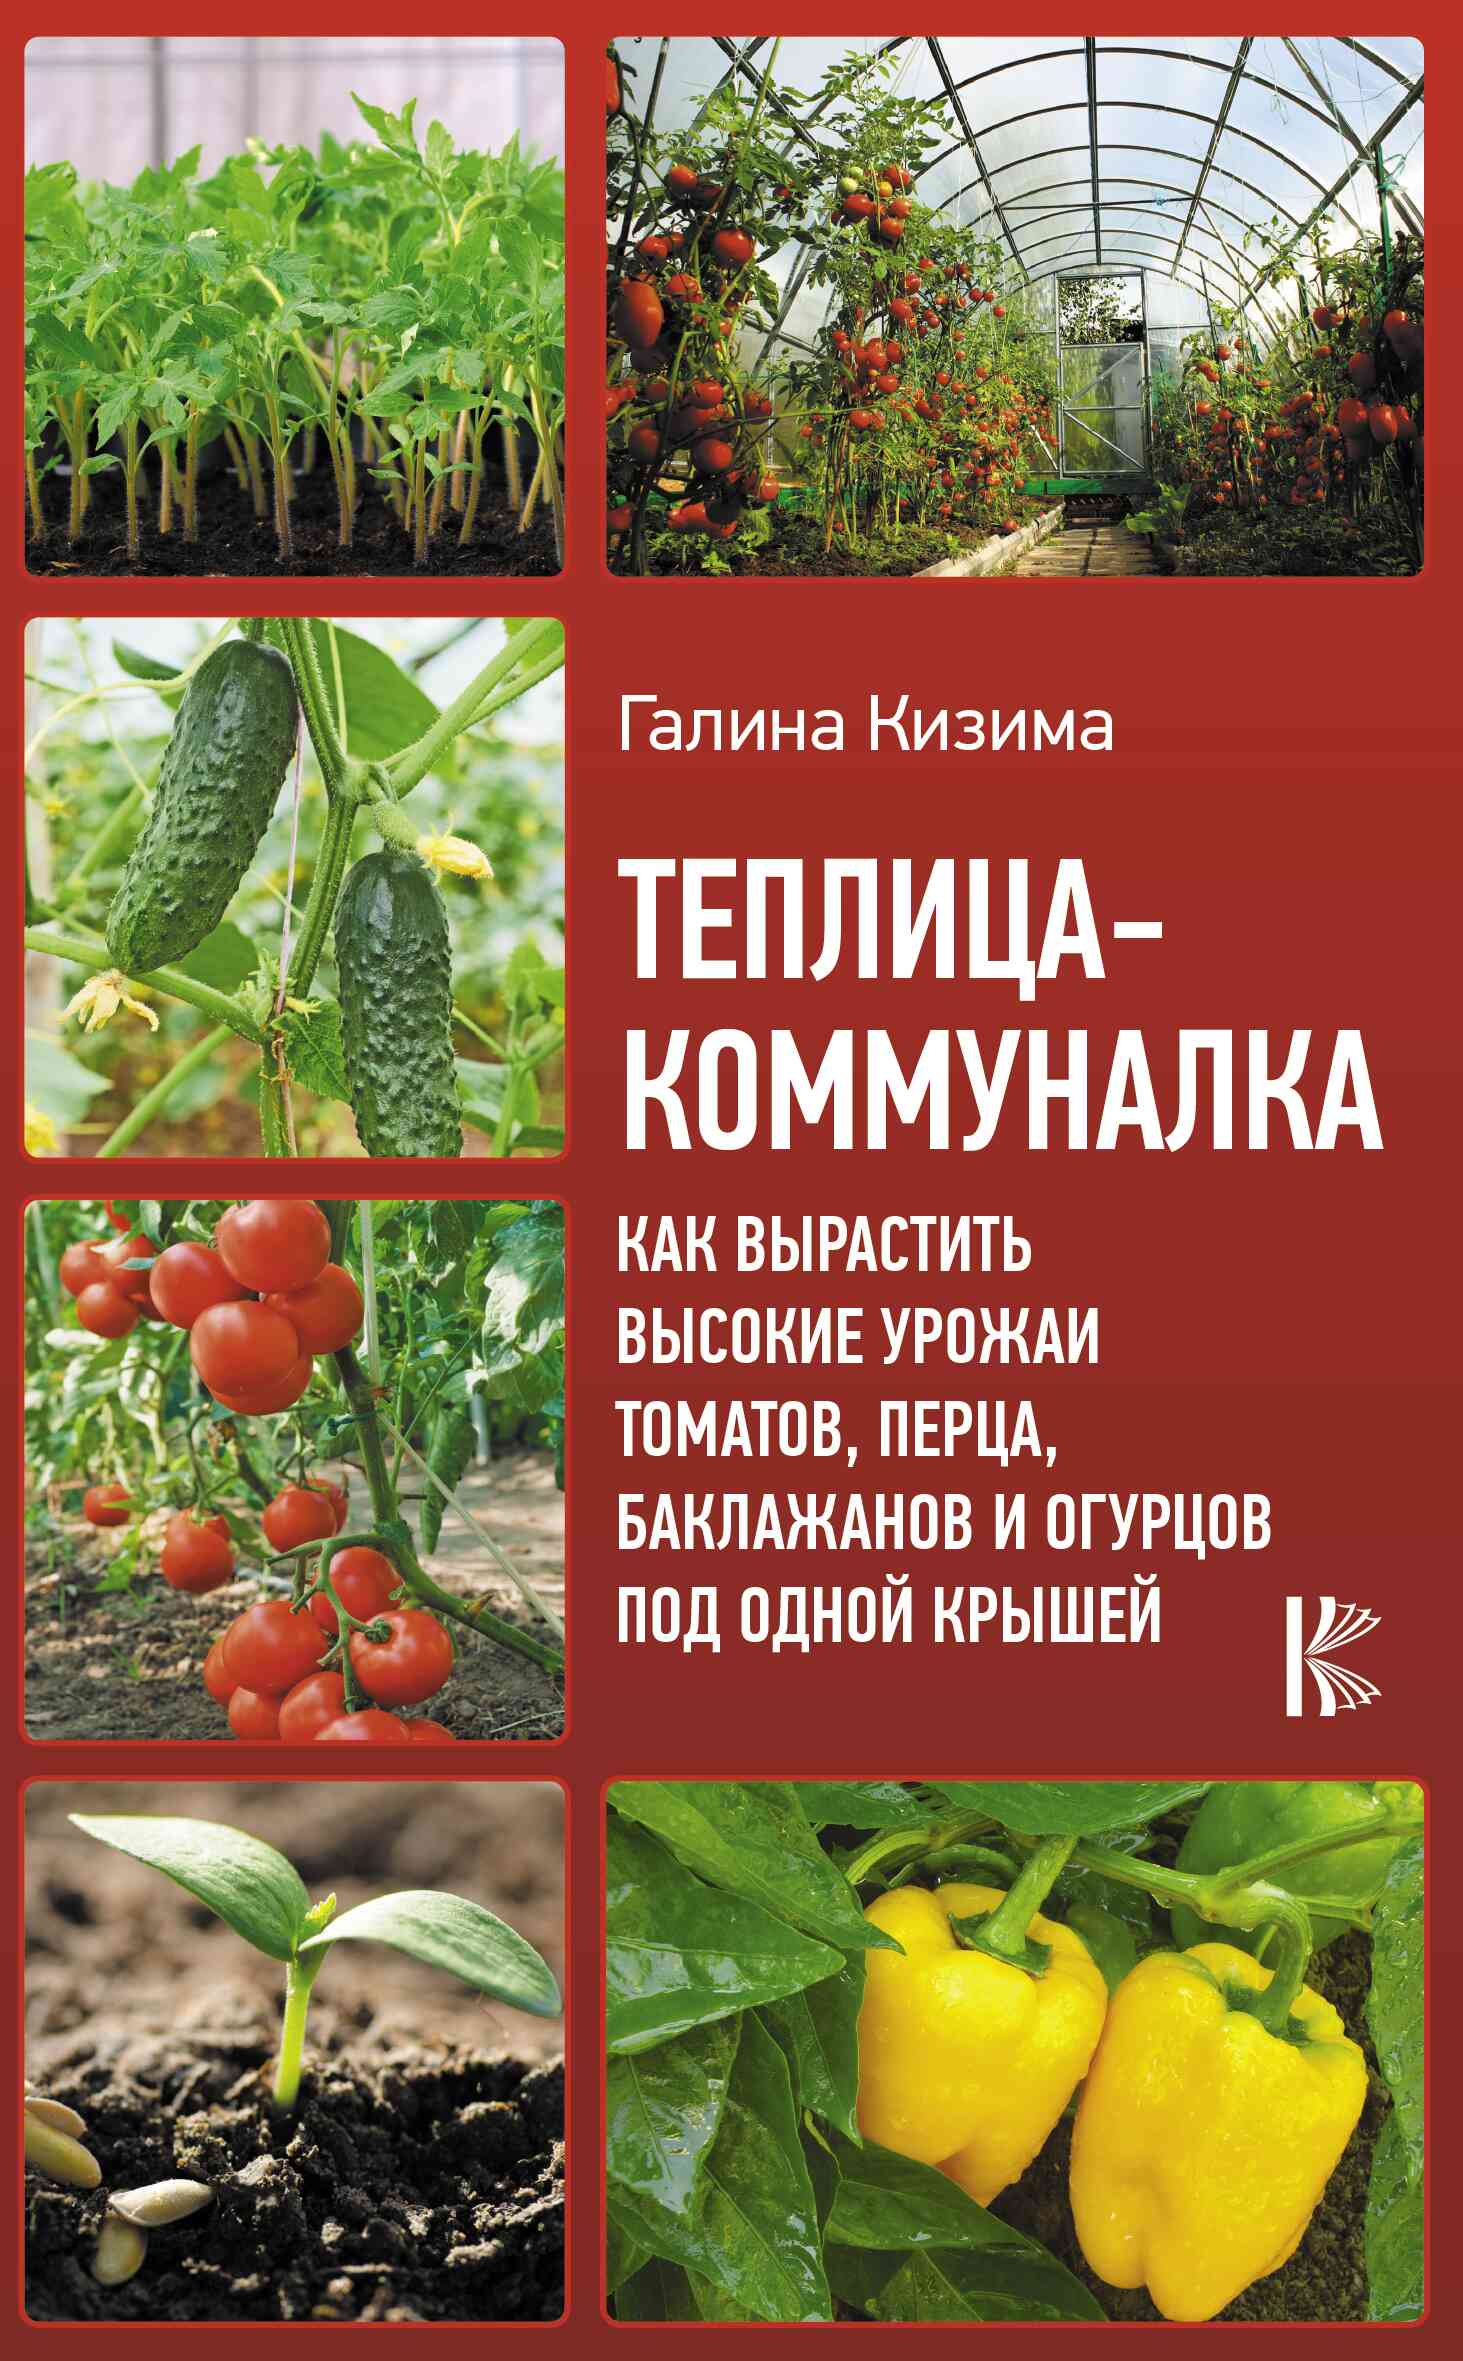 Кизима Галина - Теплица-коммуналка. Как вырастить высокие урожаи томатов, перца, баклажанов и огурцов под одной крышей скачать бесплатно